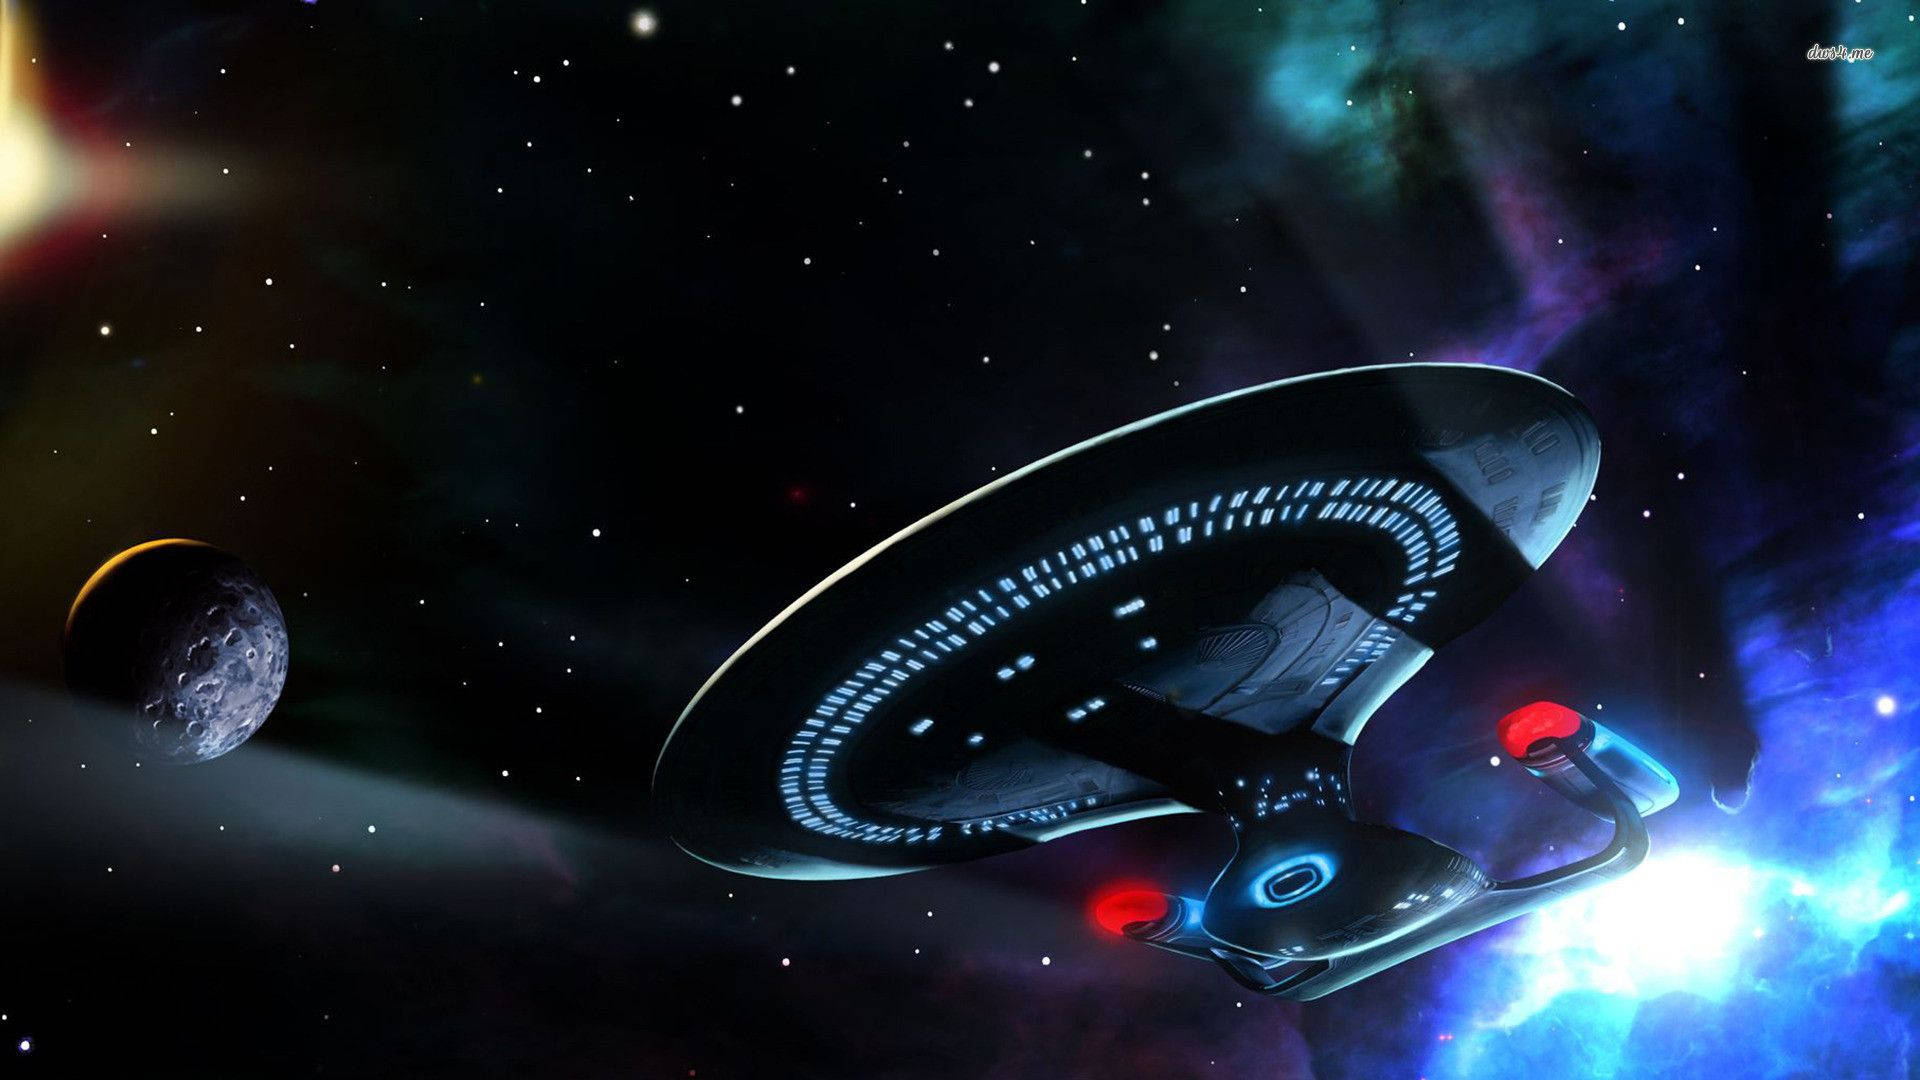 Uss Enterprise Of Star Trek